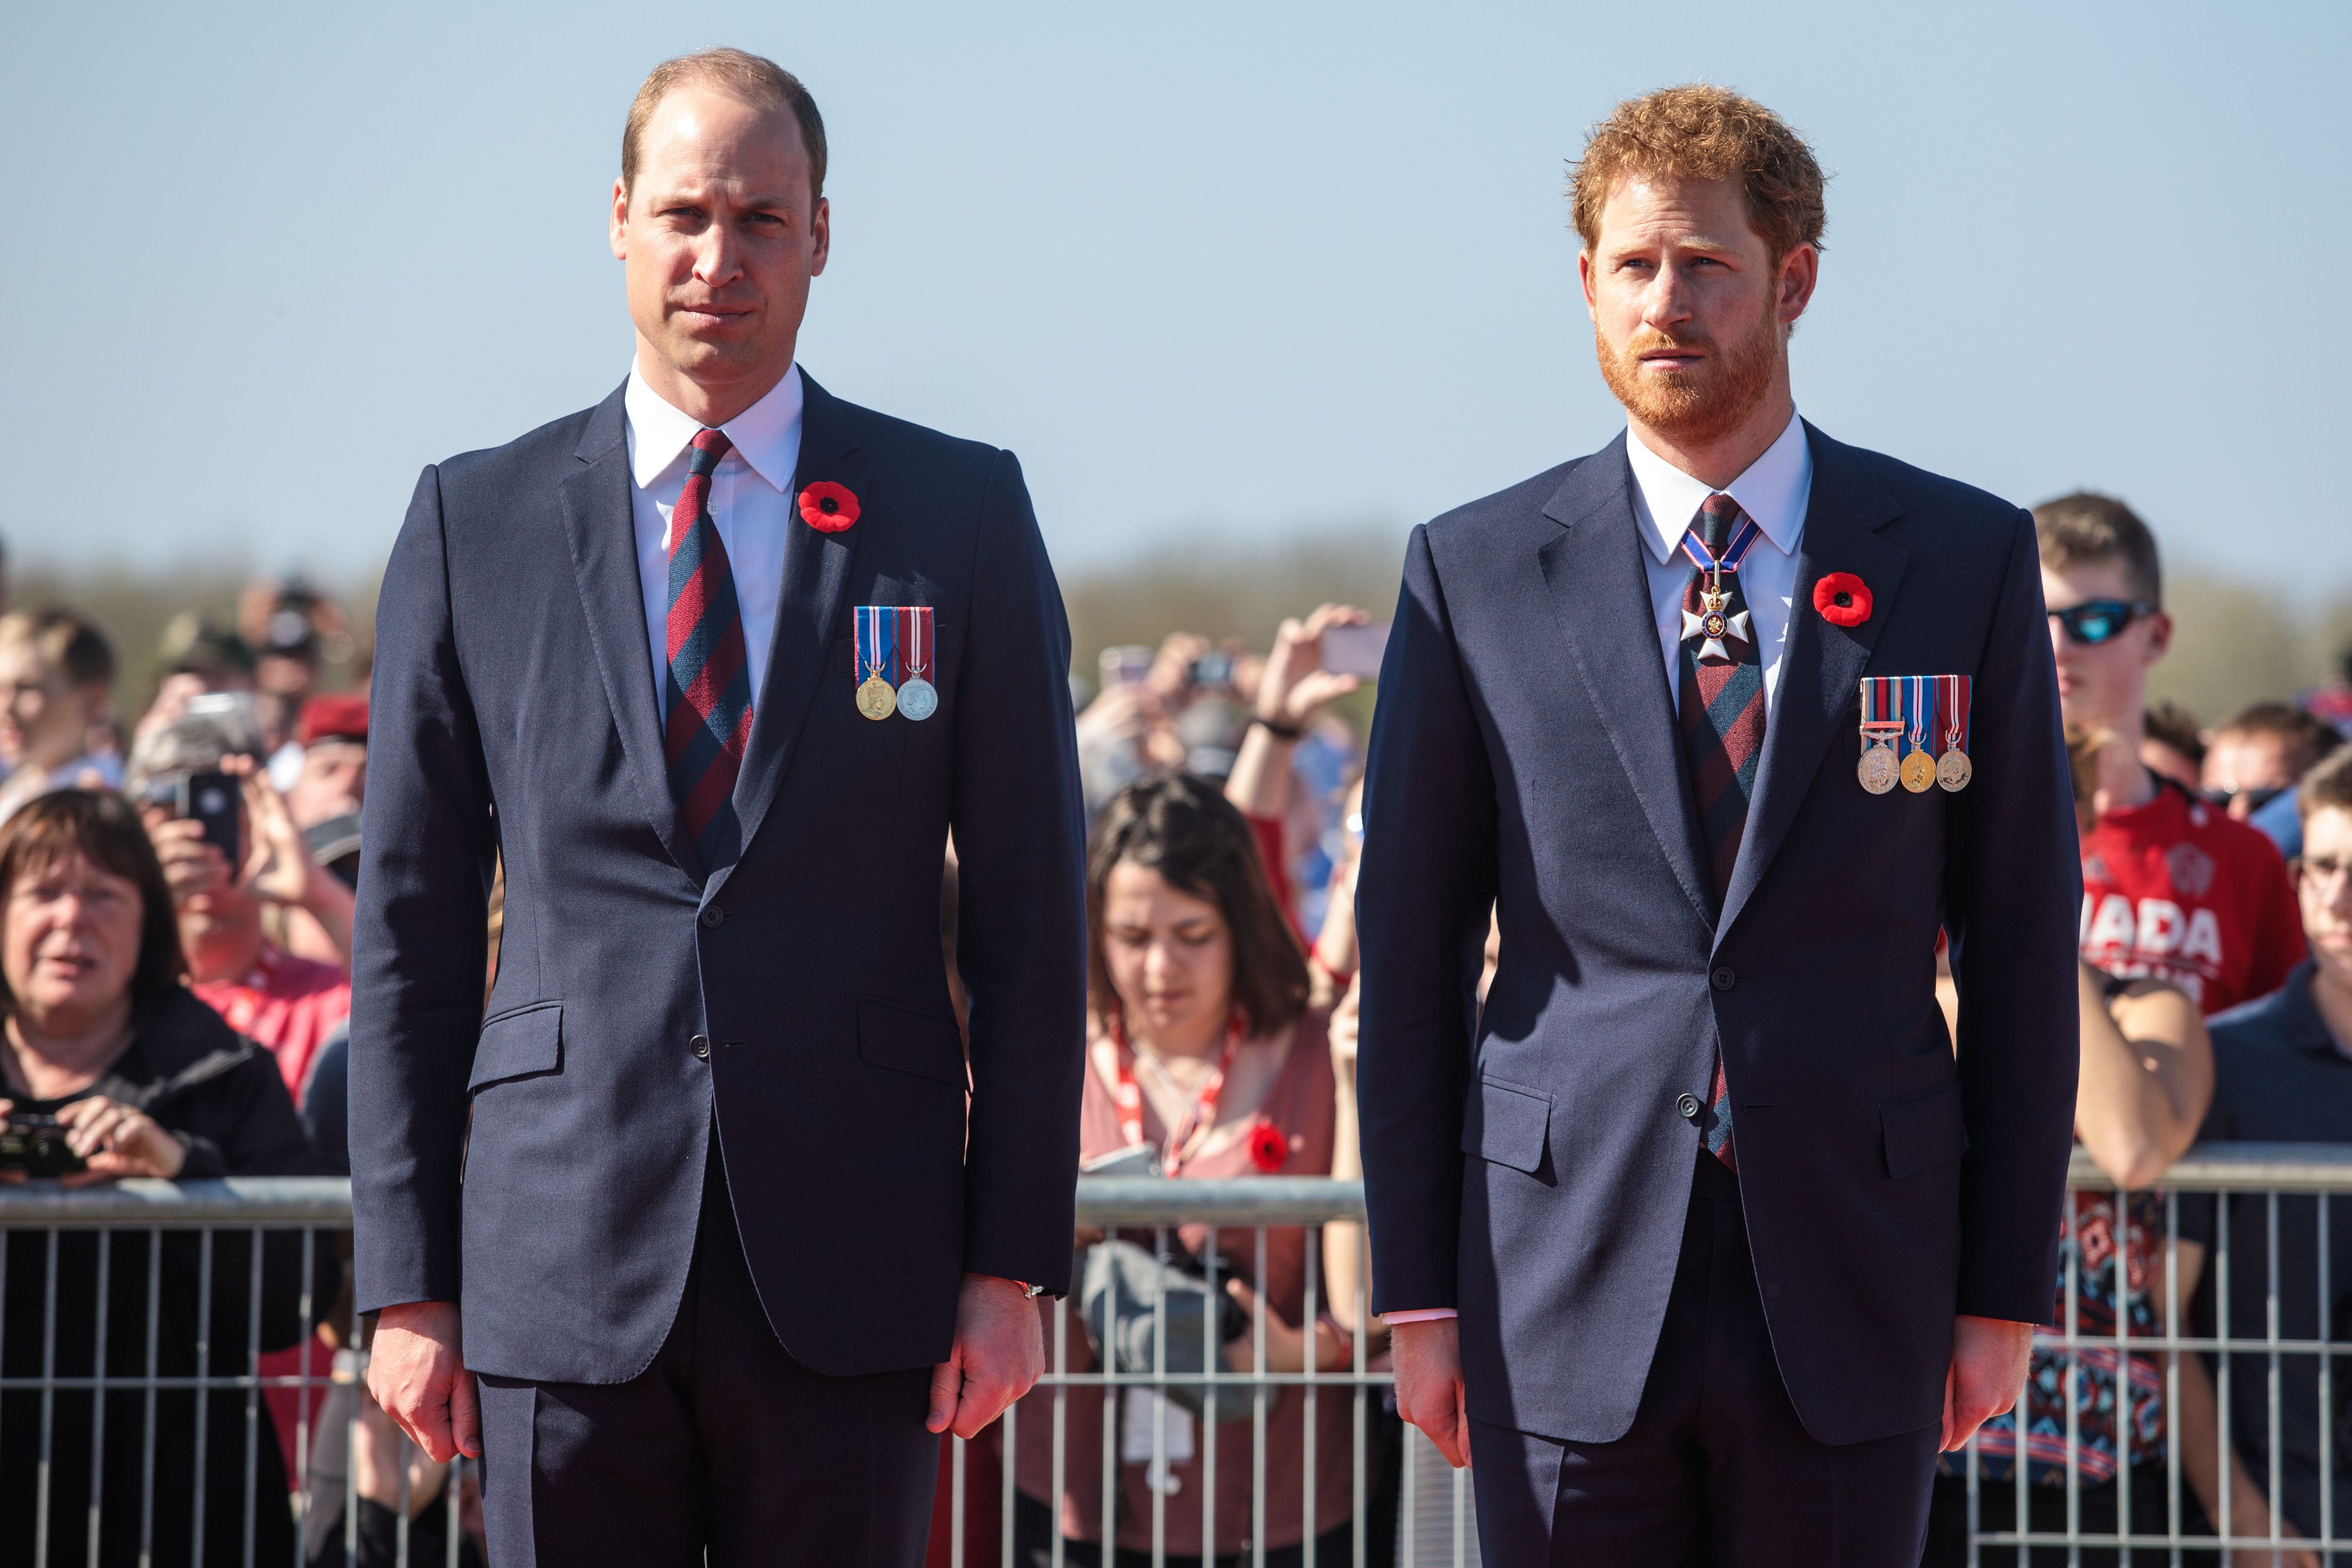 El príncipe William y el príncipe Harry en el Memorial Nacional Canadiense de Vimy, el 9 de abril de 2017 en Vimy, Francia. | Foto: Getty Images